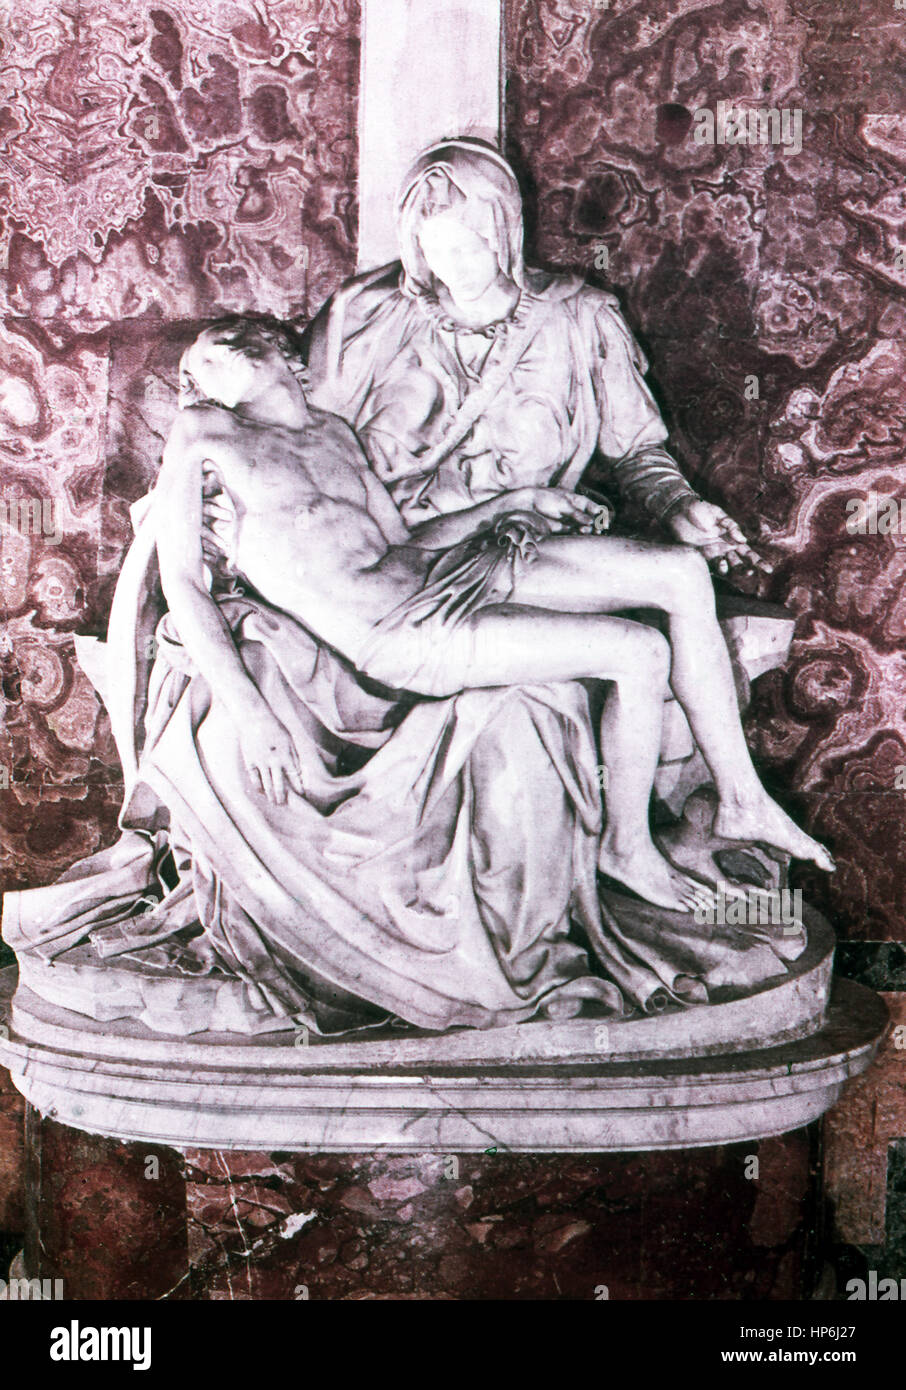 Cette sculpture de l'artiste peintre sculpteur italien Michelangelo (1475-1564) s'intitule Pieta. Le sculpteur, peintre et architecte, Michelangelo Christ sculpté couché dans les bras de sa mère, Marie, juste après la crucifixion. L'une de ses deux œuvres les plus connues (l'autre est David), il a été achevé en 1499. Il est maintenant situé dans le musée du Vatican. La photo date de 1964. Banque D'Images